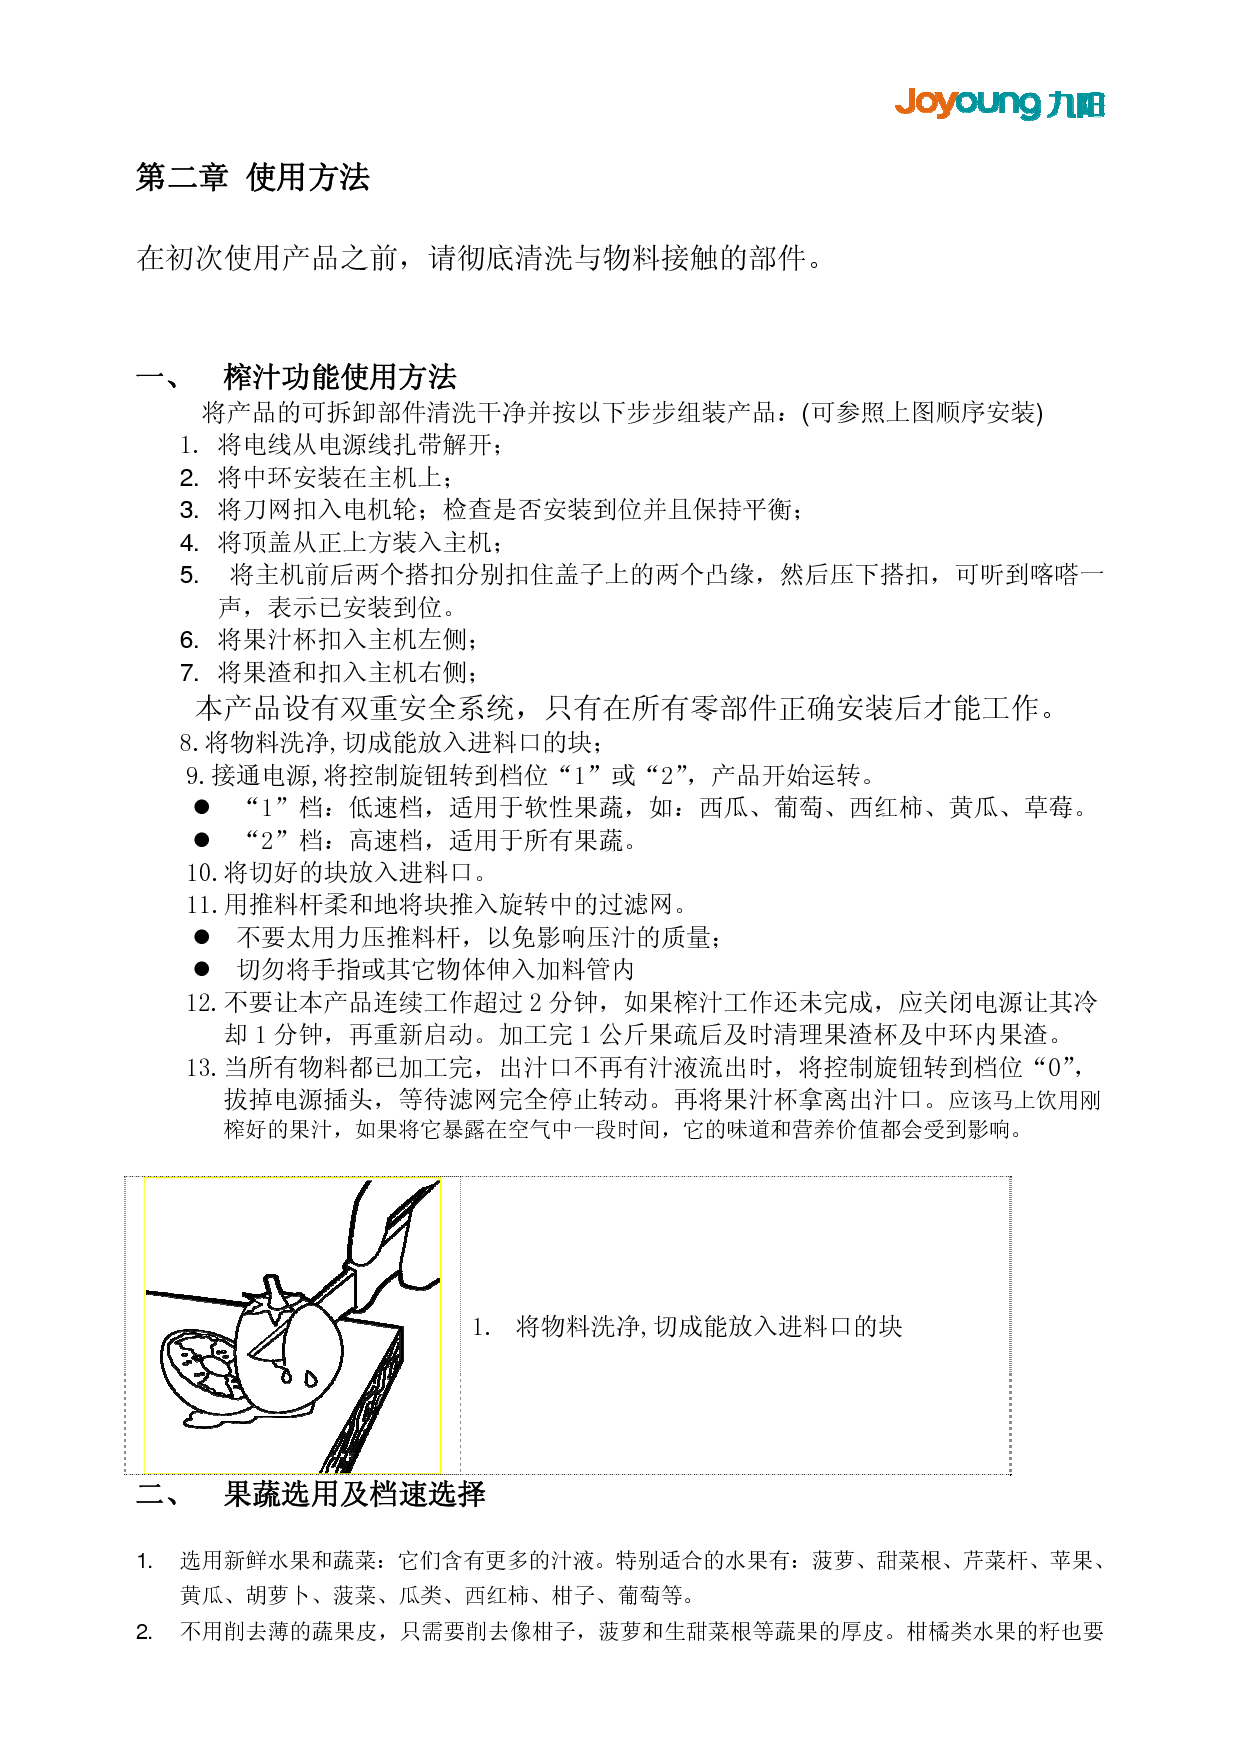 九阳 Joyyoung JYZ-A511 使用说明书 第2页